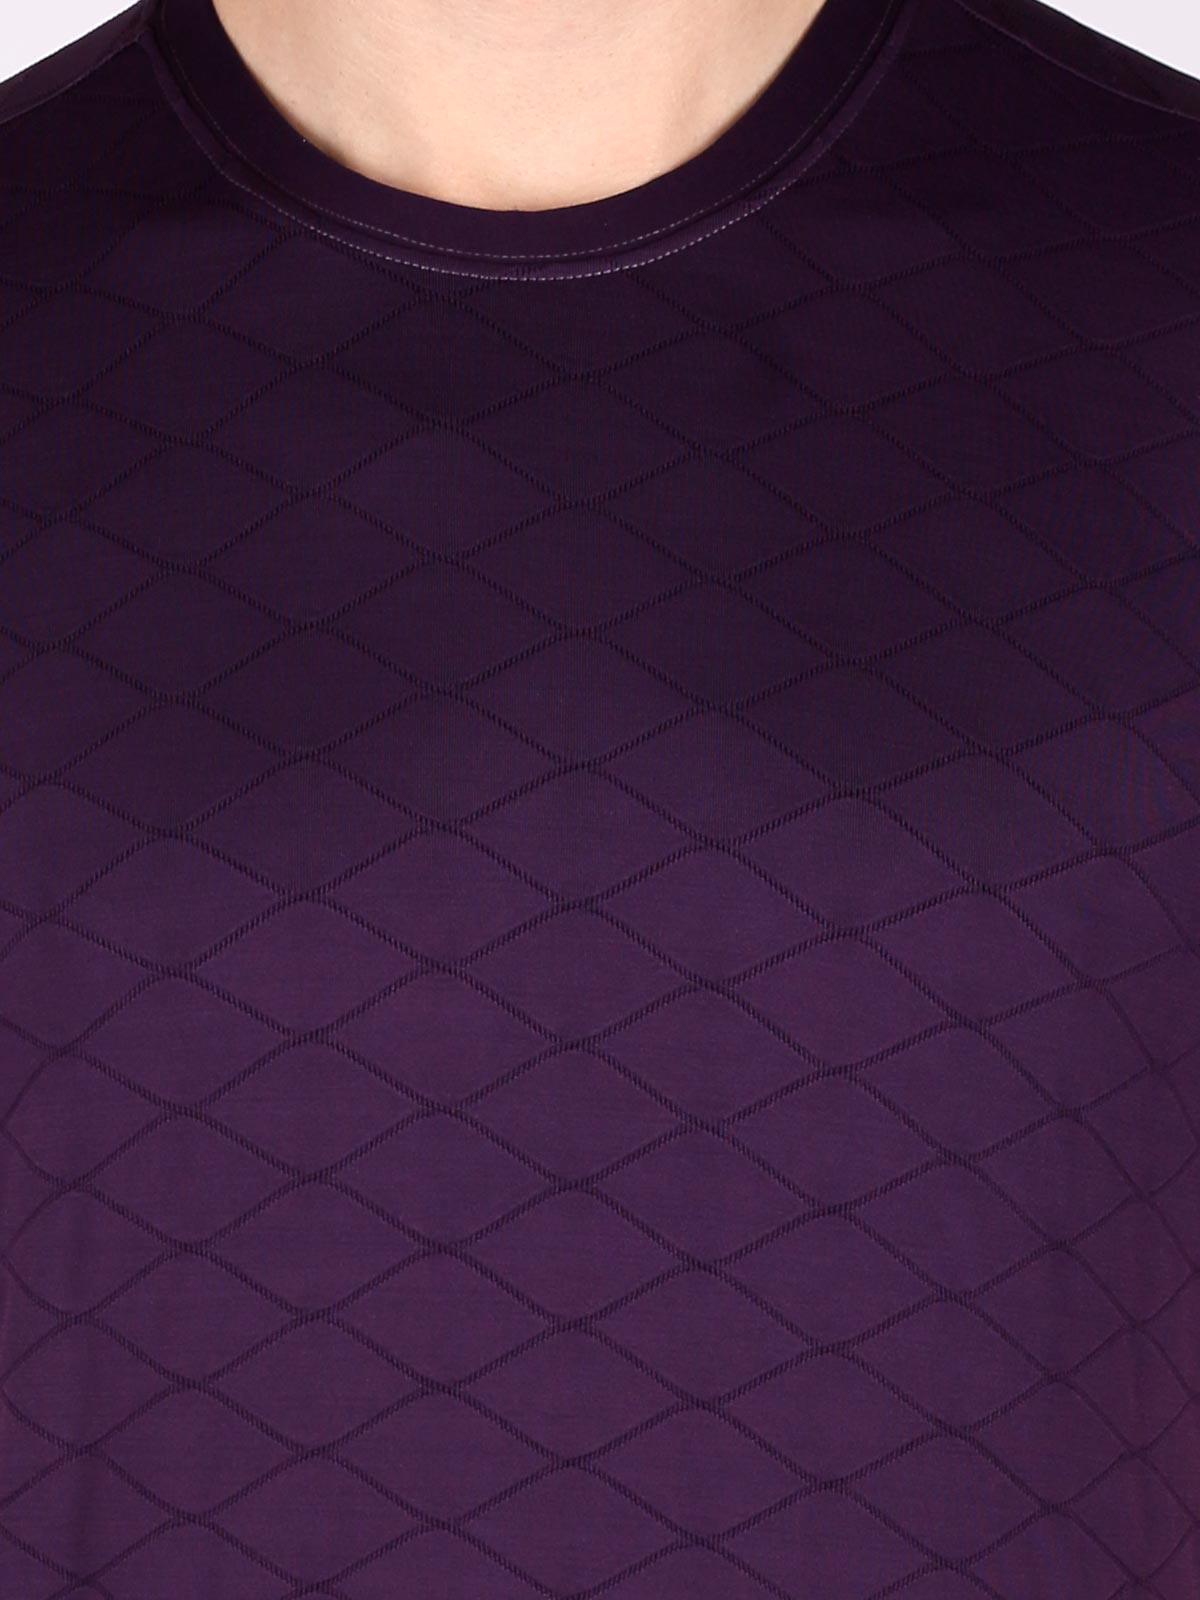 Тъмно лилава тениска на ромбове - 88010 12.00 лв img3